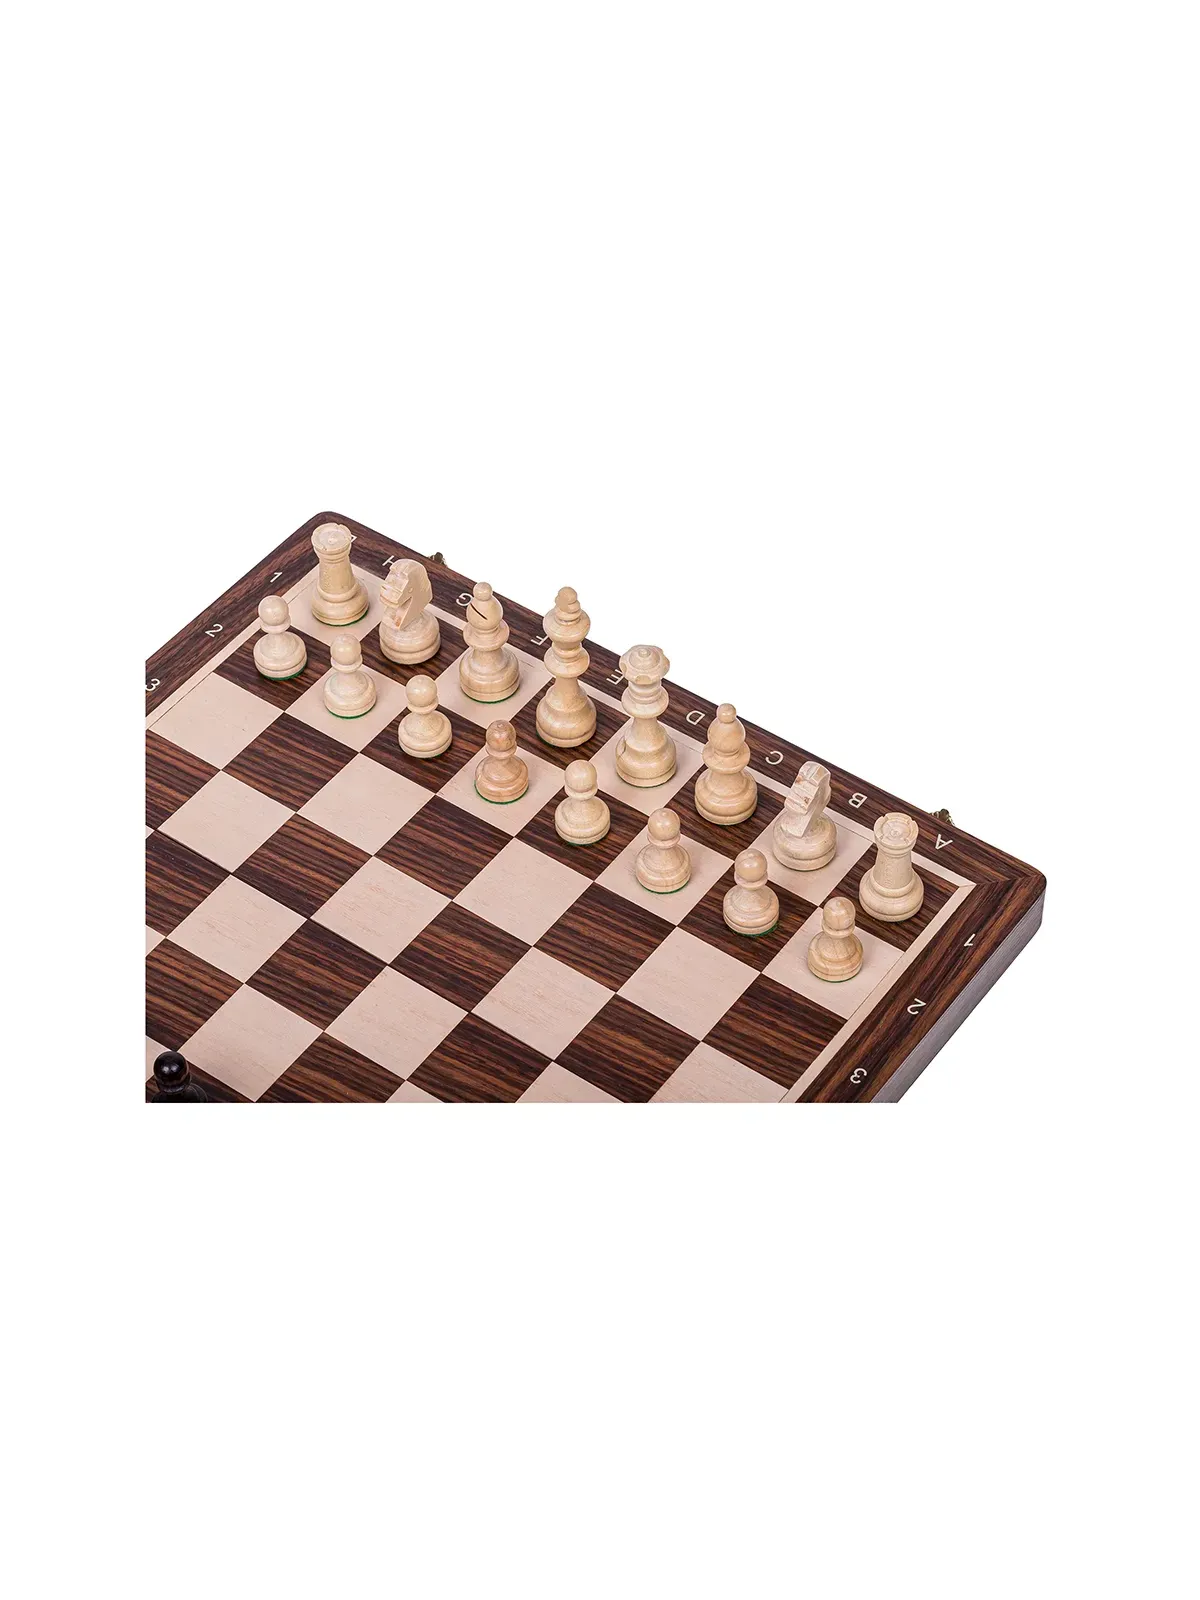 Chess Tournament No 4 - Palisander - Chess Shop - sklep-szachy.pl